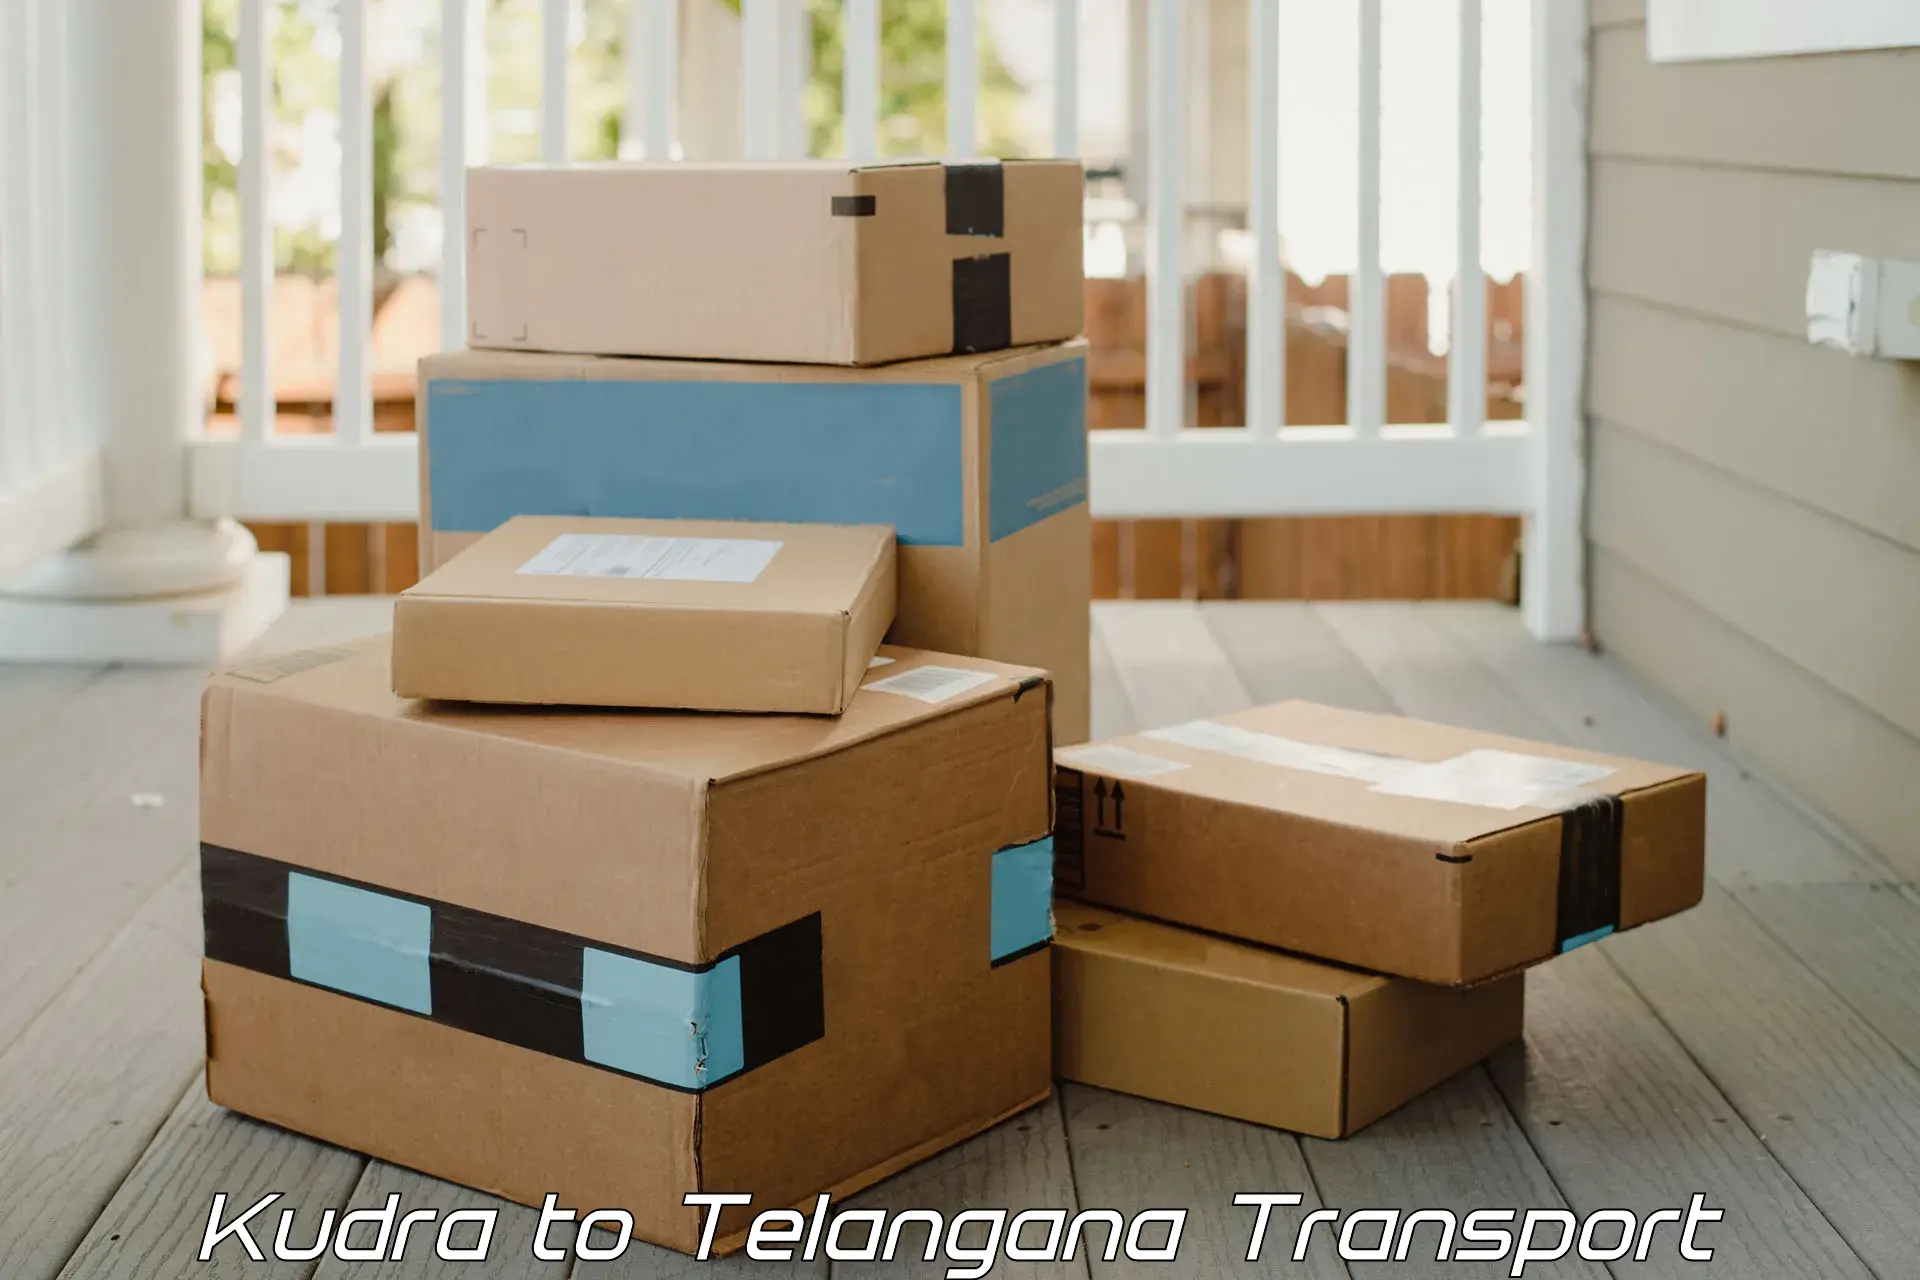 Online transport Kudra to Telangana